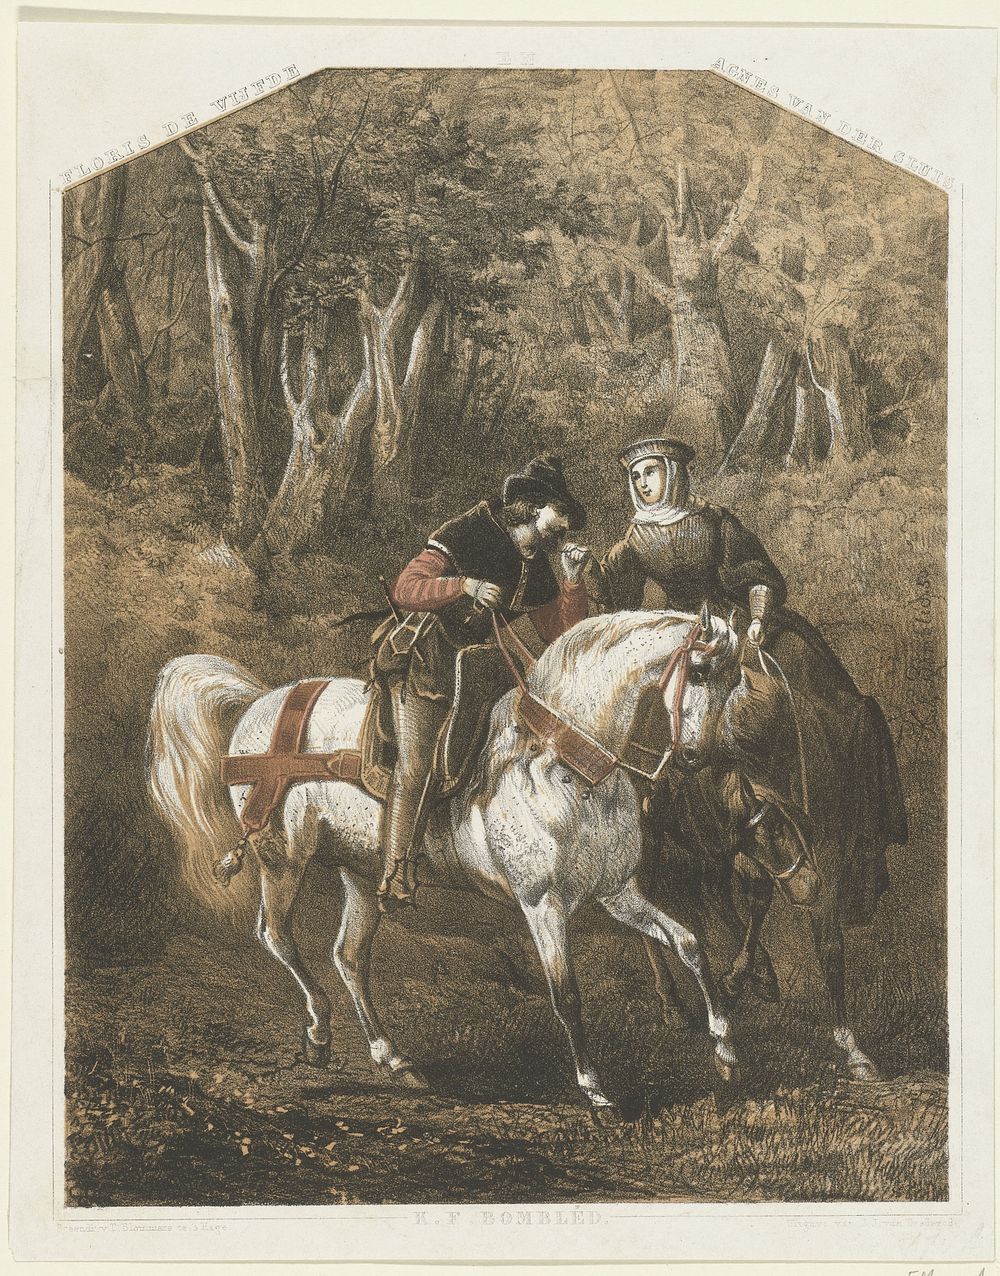 Floris V en Agnes van der Sluis, ca. 1270-1280 (1850) by Karel Frederik Bombled, P Blommers Steendrukkerij van and J J van…